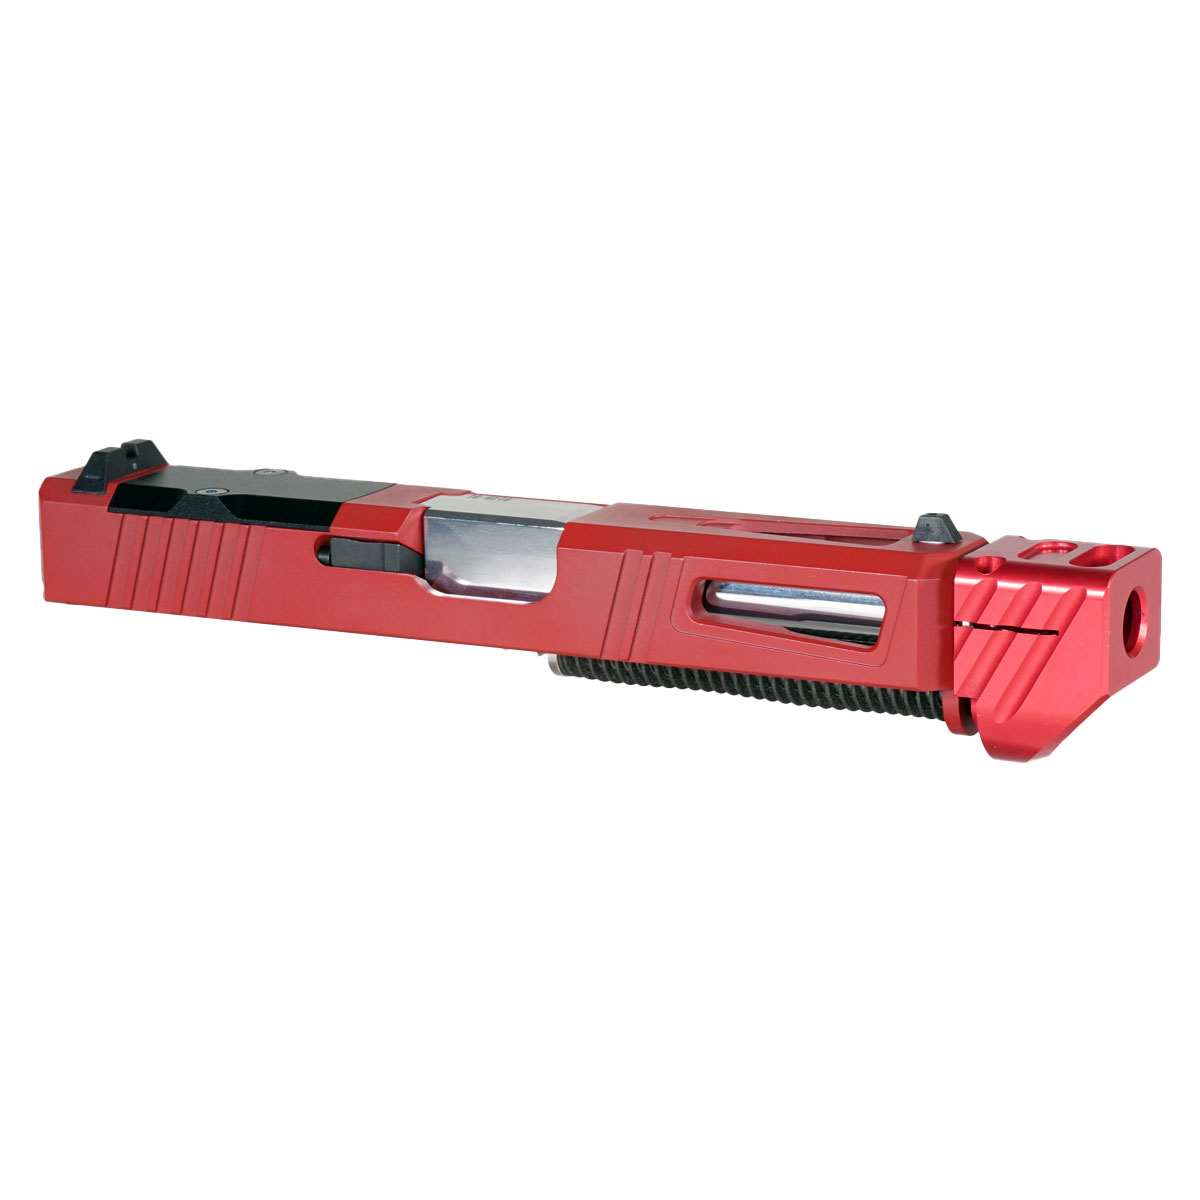 DD 'Pisa V3 w/ Red Compensator' 9mm Complete Slide Kit - Glock 19 Gen 1-3 Compatible